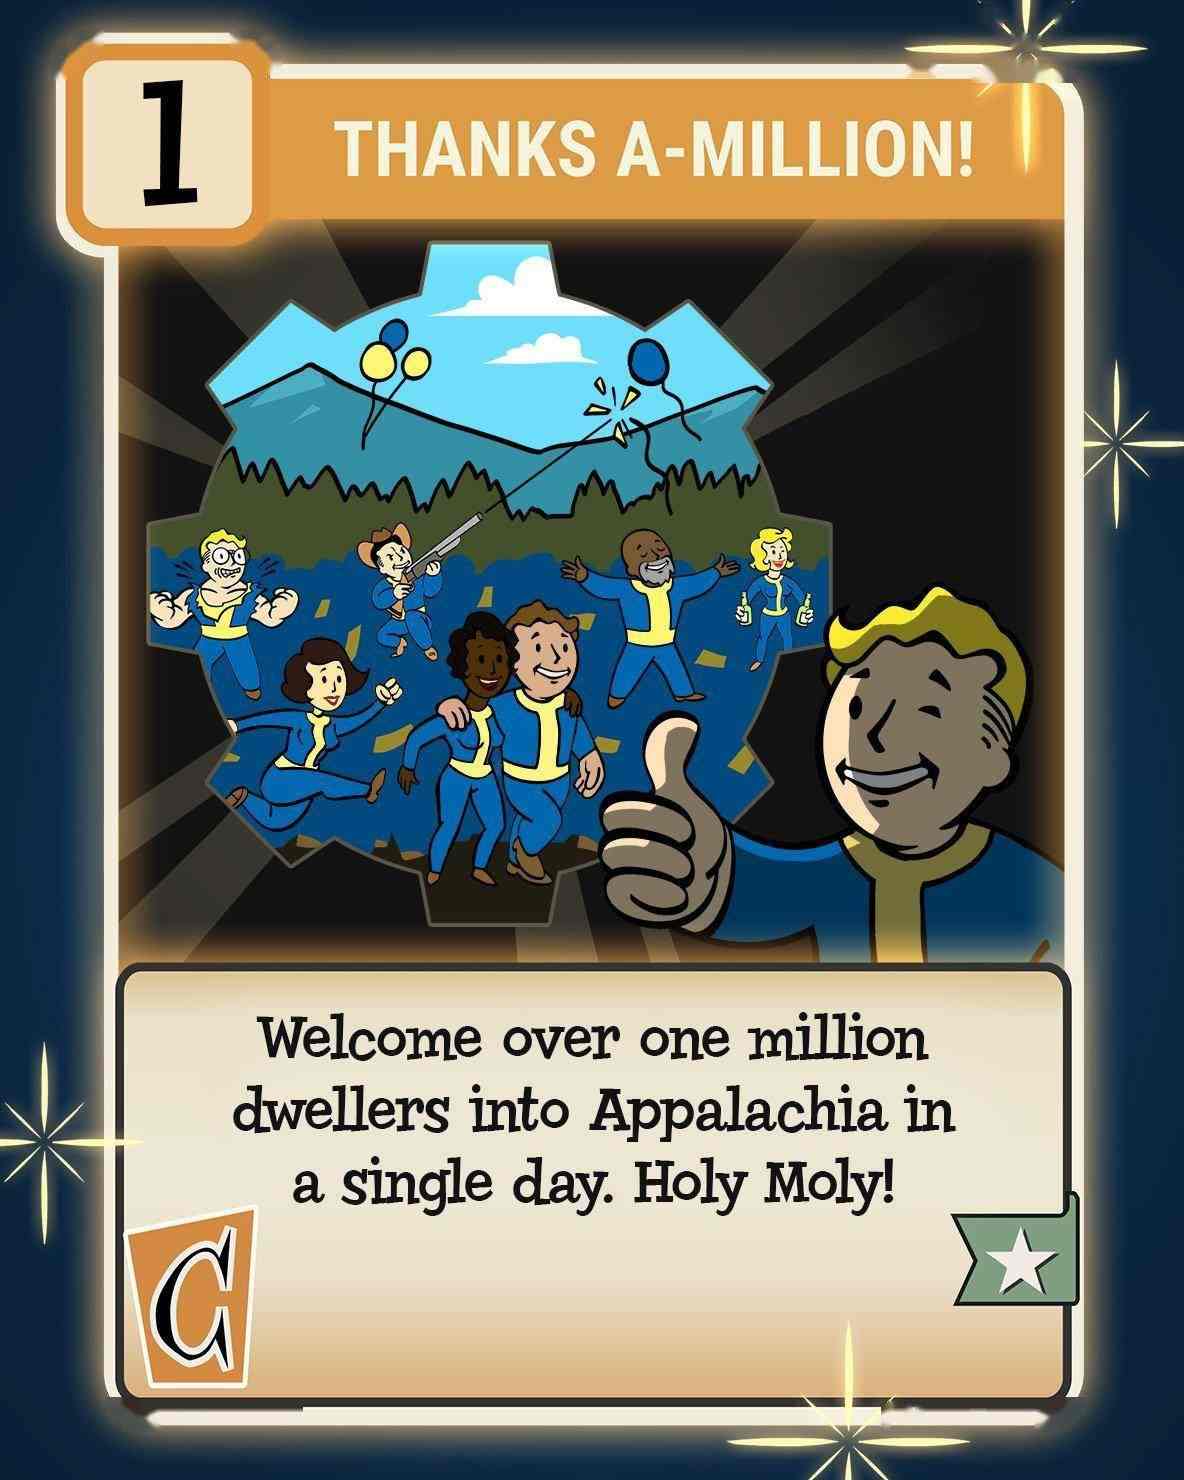 真人剧开播后《辐射》全系列单日玩家达到了500万